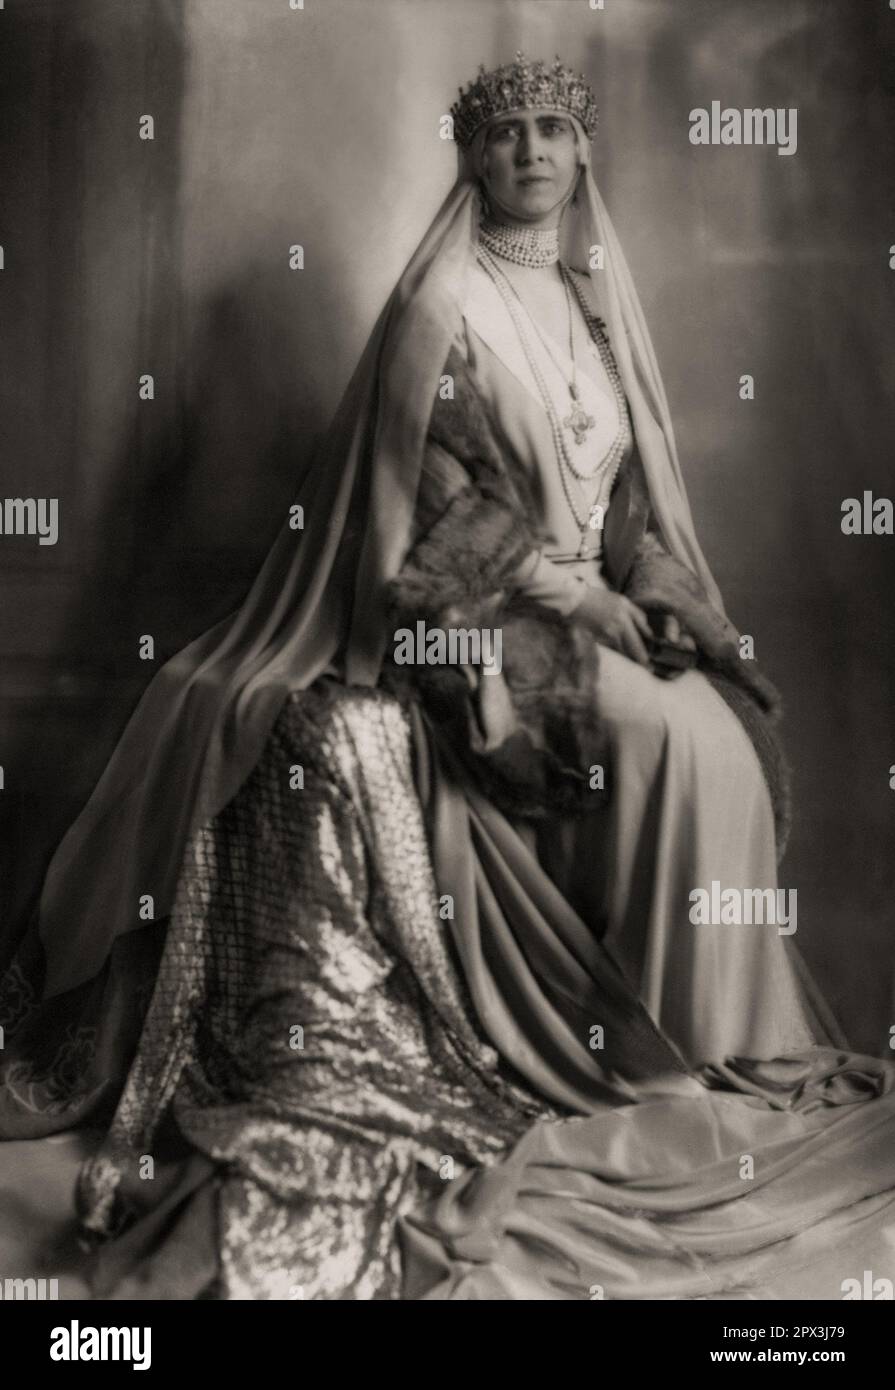 1929 , Roma , ITALIA : la regina SOPHIE Dorothea Ulrike di GRECIA ( 1870 - 1932 ), nata principessa di PRUSSIA di Grecia e Danimarca , sorella di Kaiser Wilhelm II di Germania , sposata con IL RE DI GRECIA KONSTANTINOS i ( Costantino , 1868 - 1923 ). Fu la madre di 3 Re di Grecia (GIORGIOS II , ALEXANDROS i e PAULOS i ) e della principessa Irene (1904 - 1974 ) sposata con il principe italiano Aimone di SAVOIA AOSTA Duca di SPOLETO . Foto di EVA BARRETT ( 1879 - 1950 ). - GRECIA - CASA DELLO SCHLESWIG HOLSTEIN SONDERBURG GLUCKSBURG - COSTANTINO - SOPHIA - SOFIA - REGINA - STORIA - FOTO STORICHE - PORTO Foto Stock